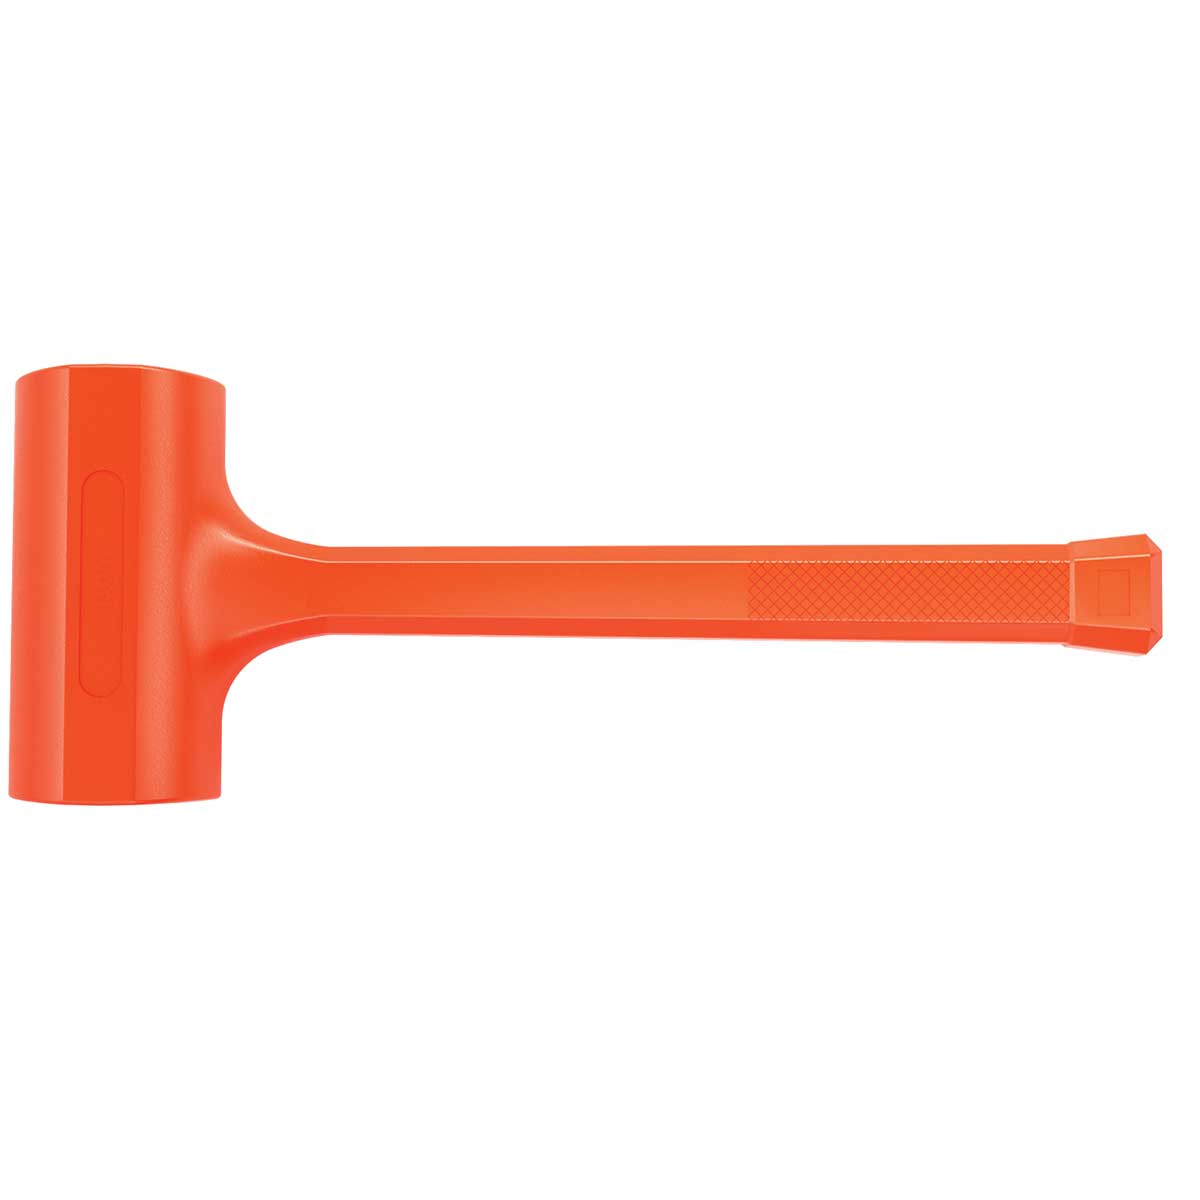 Bon Tool Dead Blow Hammer - 4lb